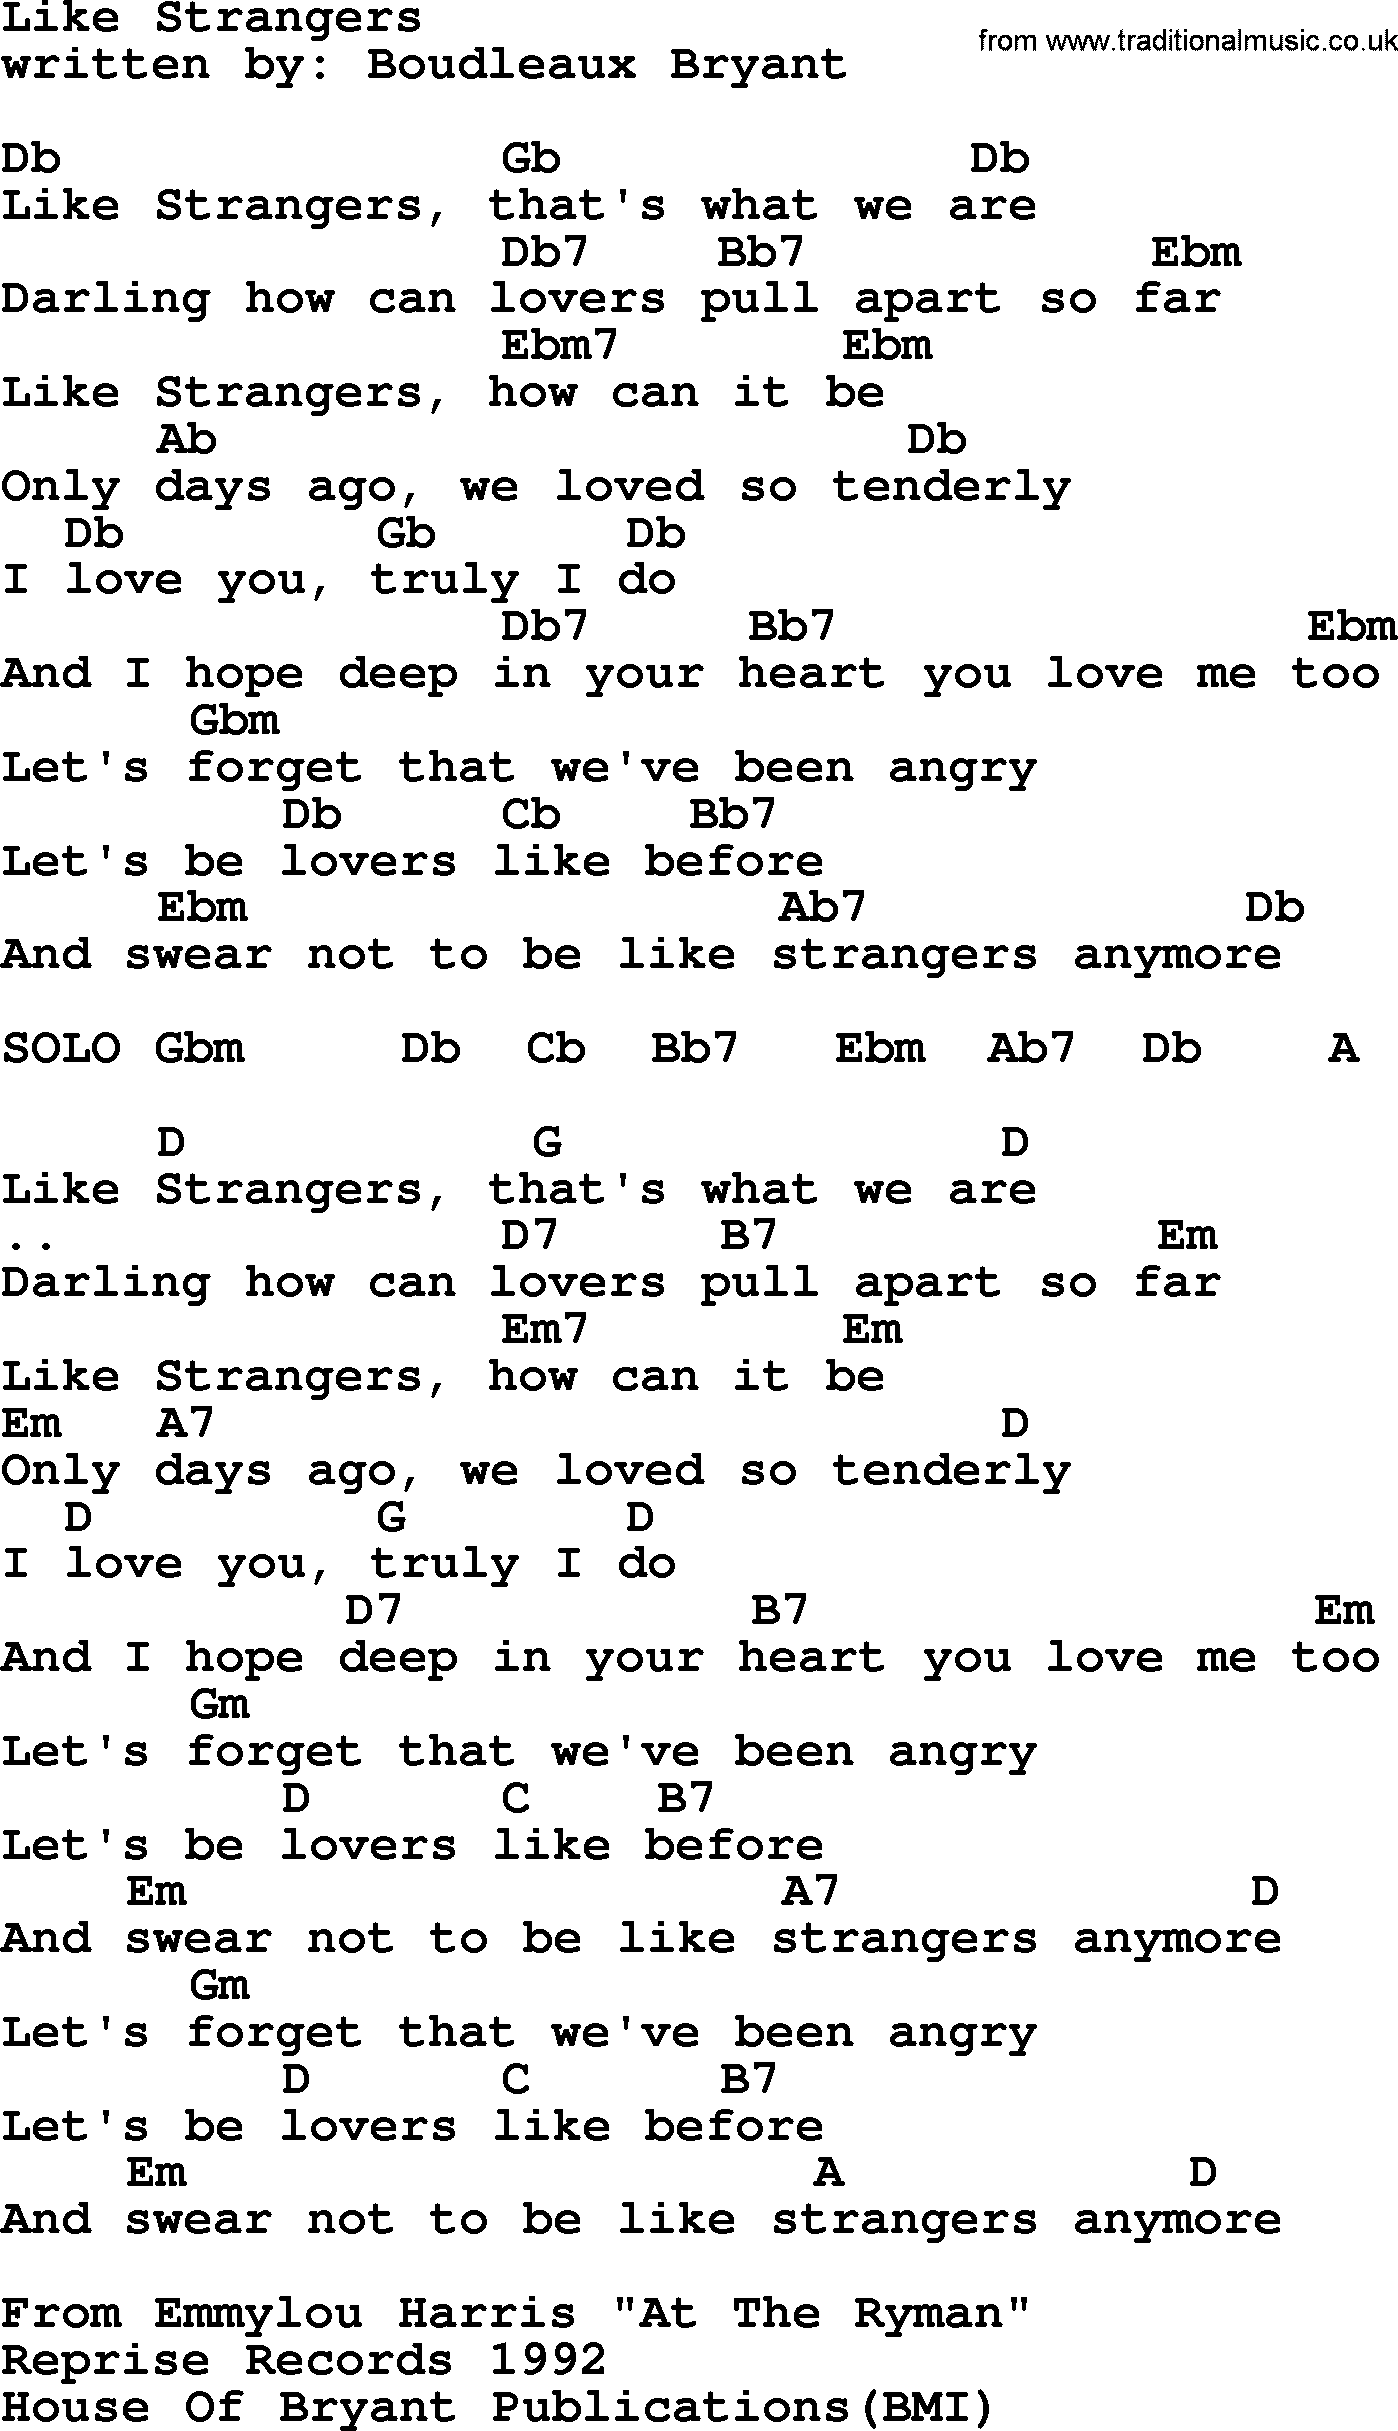 Emmylou Harris song: Like Strangers lyrics and chords